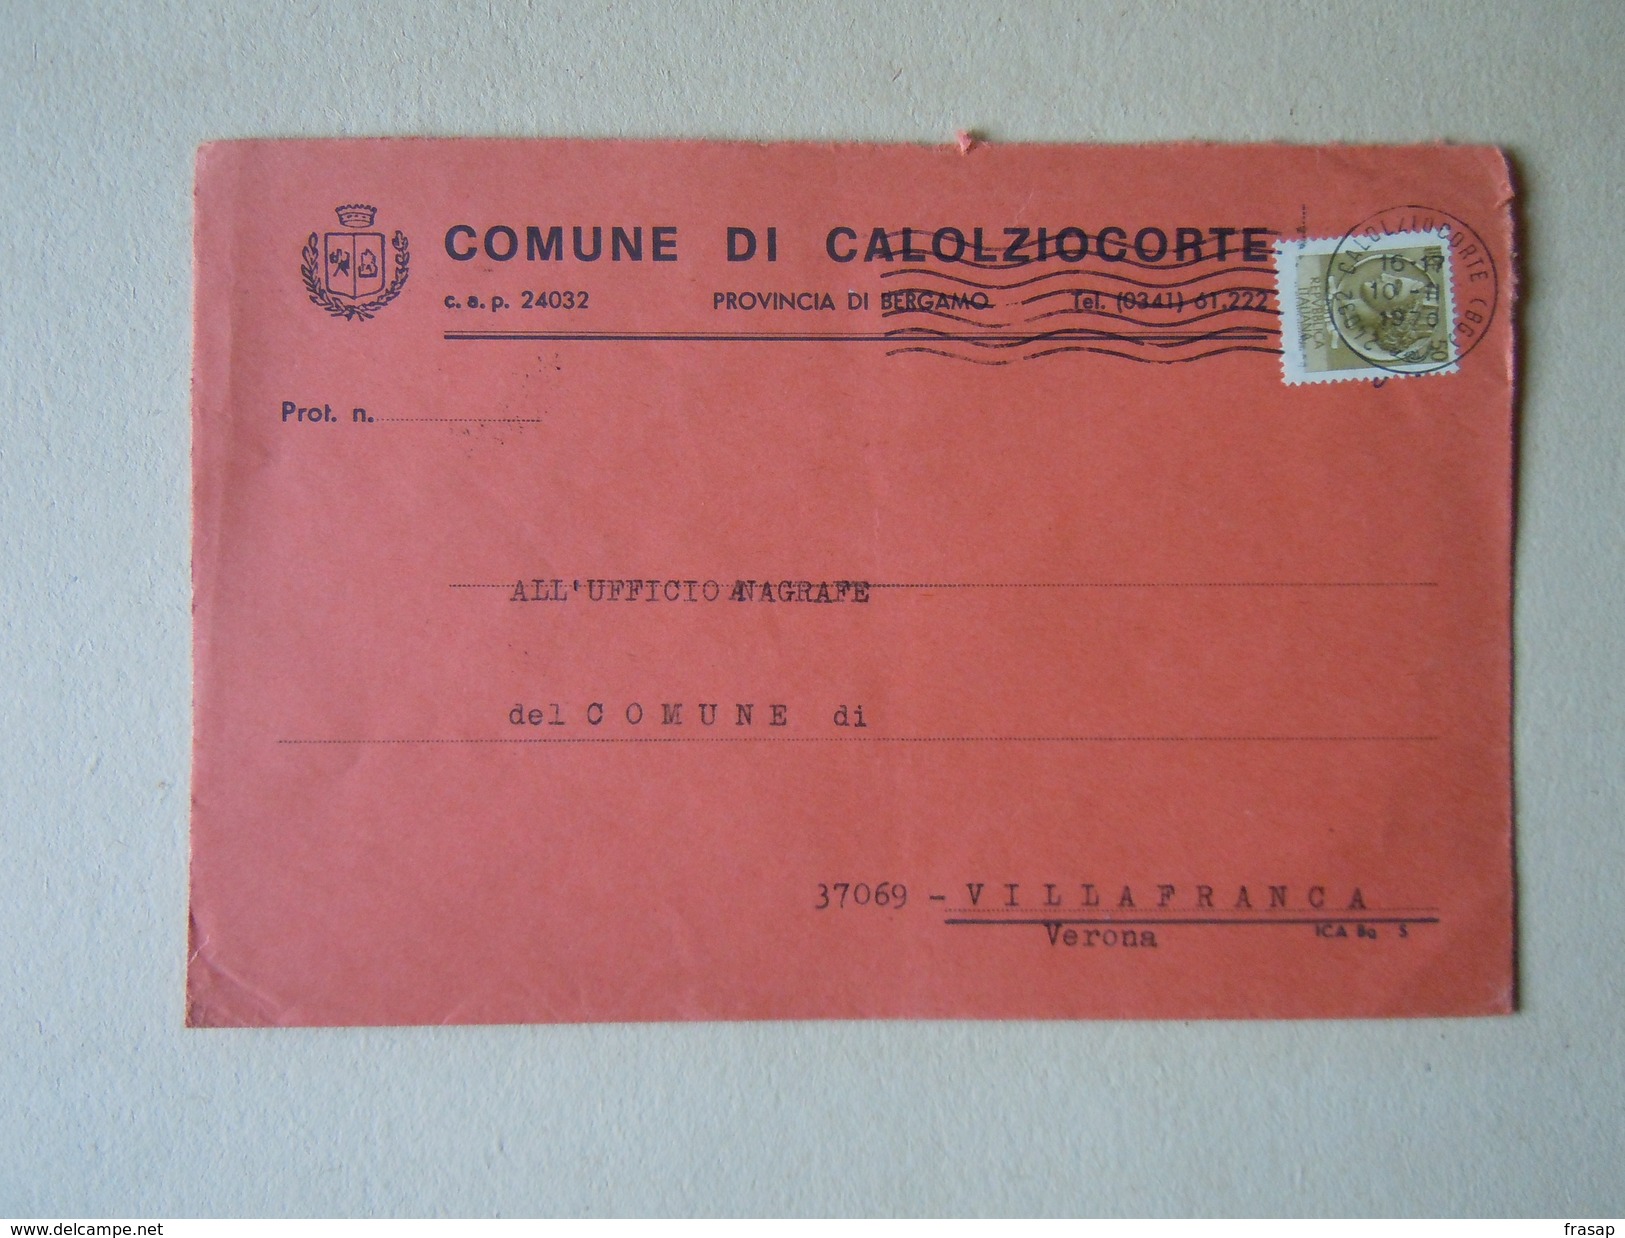 TEMATICA BUSTE COMUNALI - COMUNE DI CALOLZIOCORTO   1969 - Buste